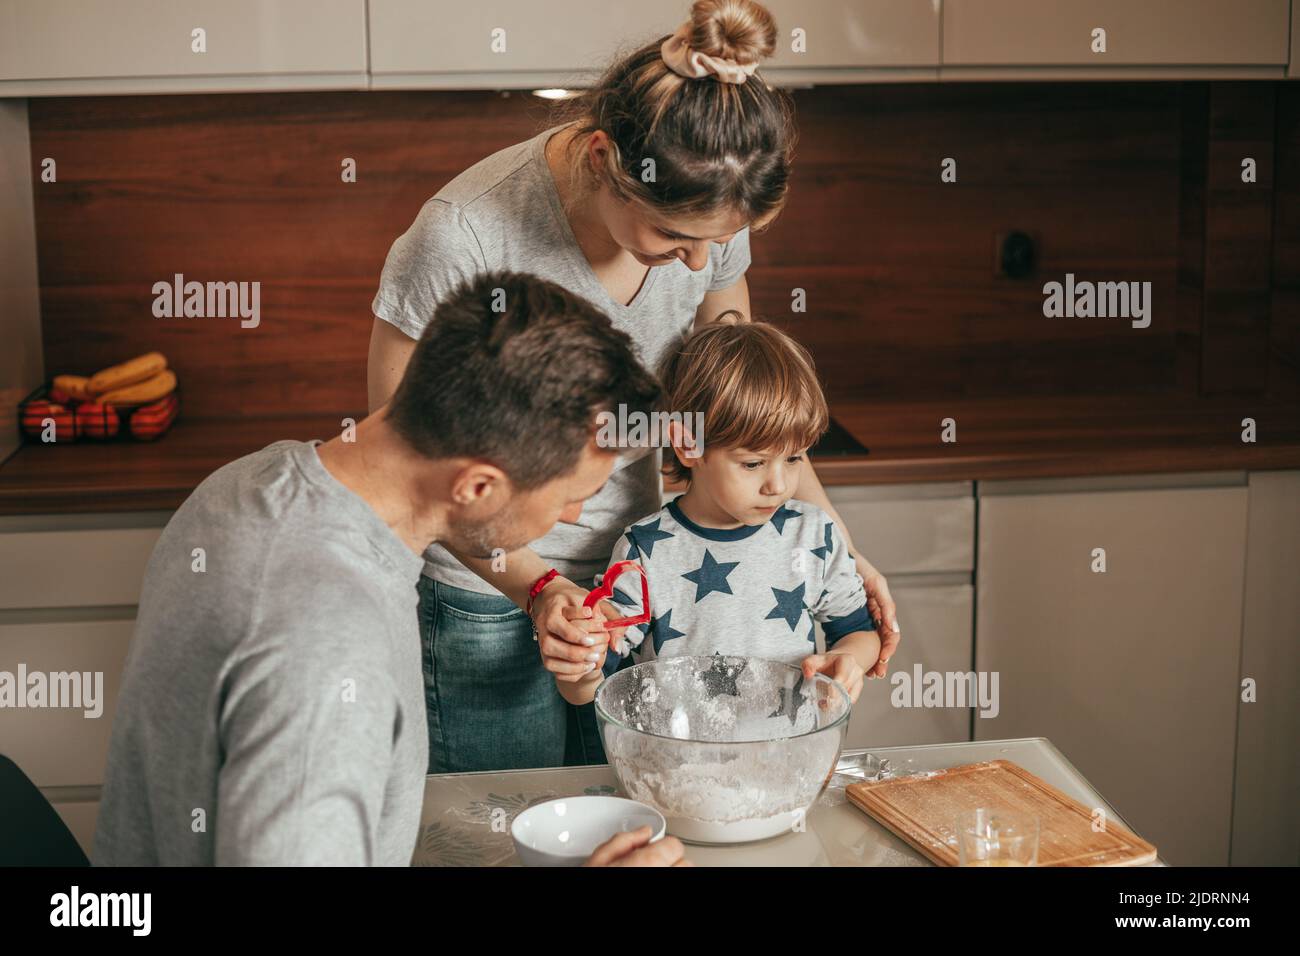 Mutter, Vater und Sohn bereiten sich auf die Backküche vor, Teamwork. Glückliche Stunden der jungen Familie, Vater Mutter und Kind, Eltern und Kind. Stockfoto